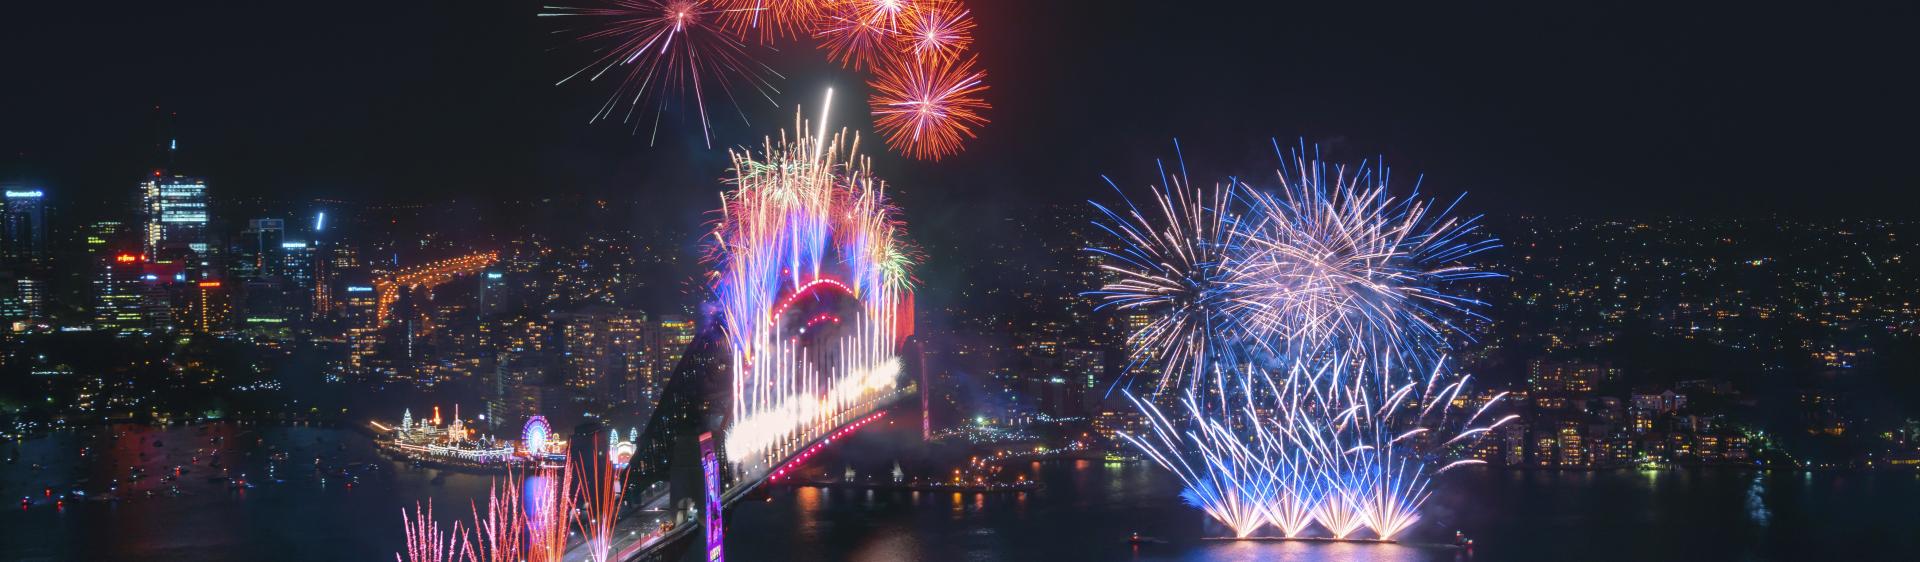 壮观的午夜烟花汇演遍布悉尼港在庆祝新的一年的开始2020 ， 悉尼